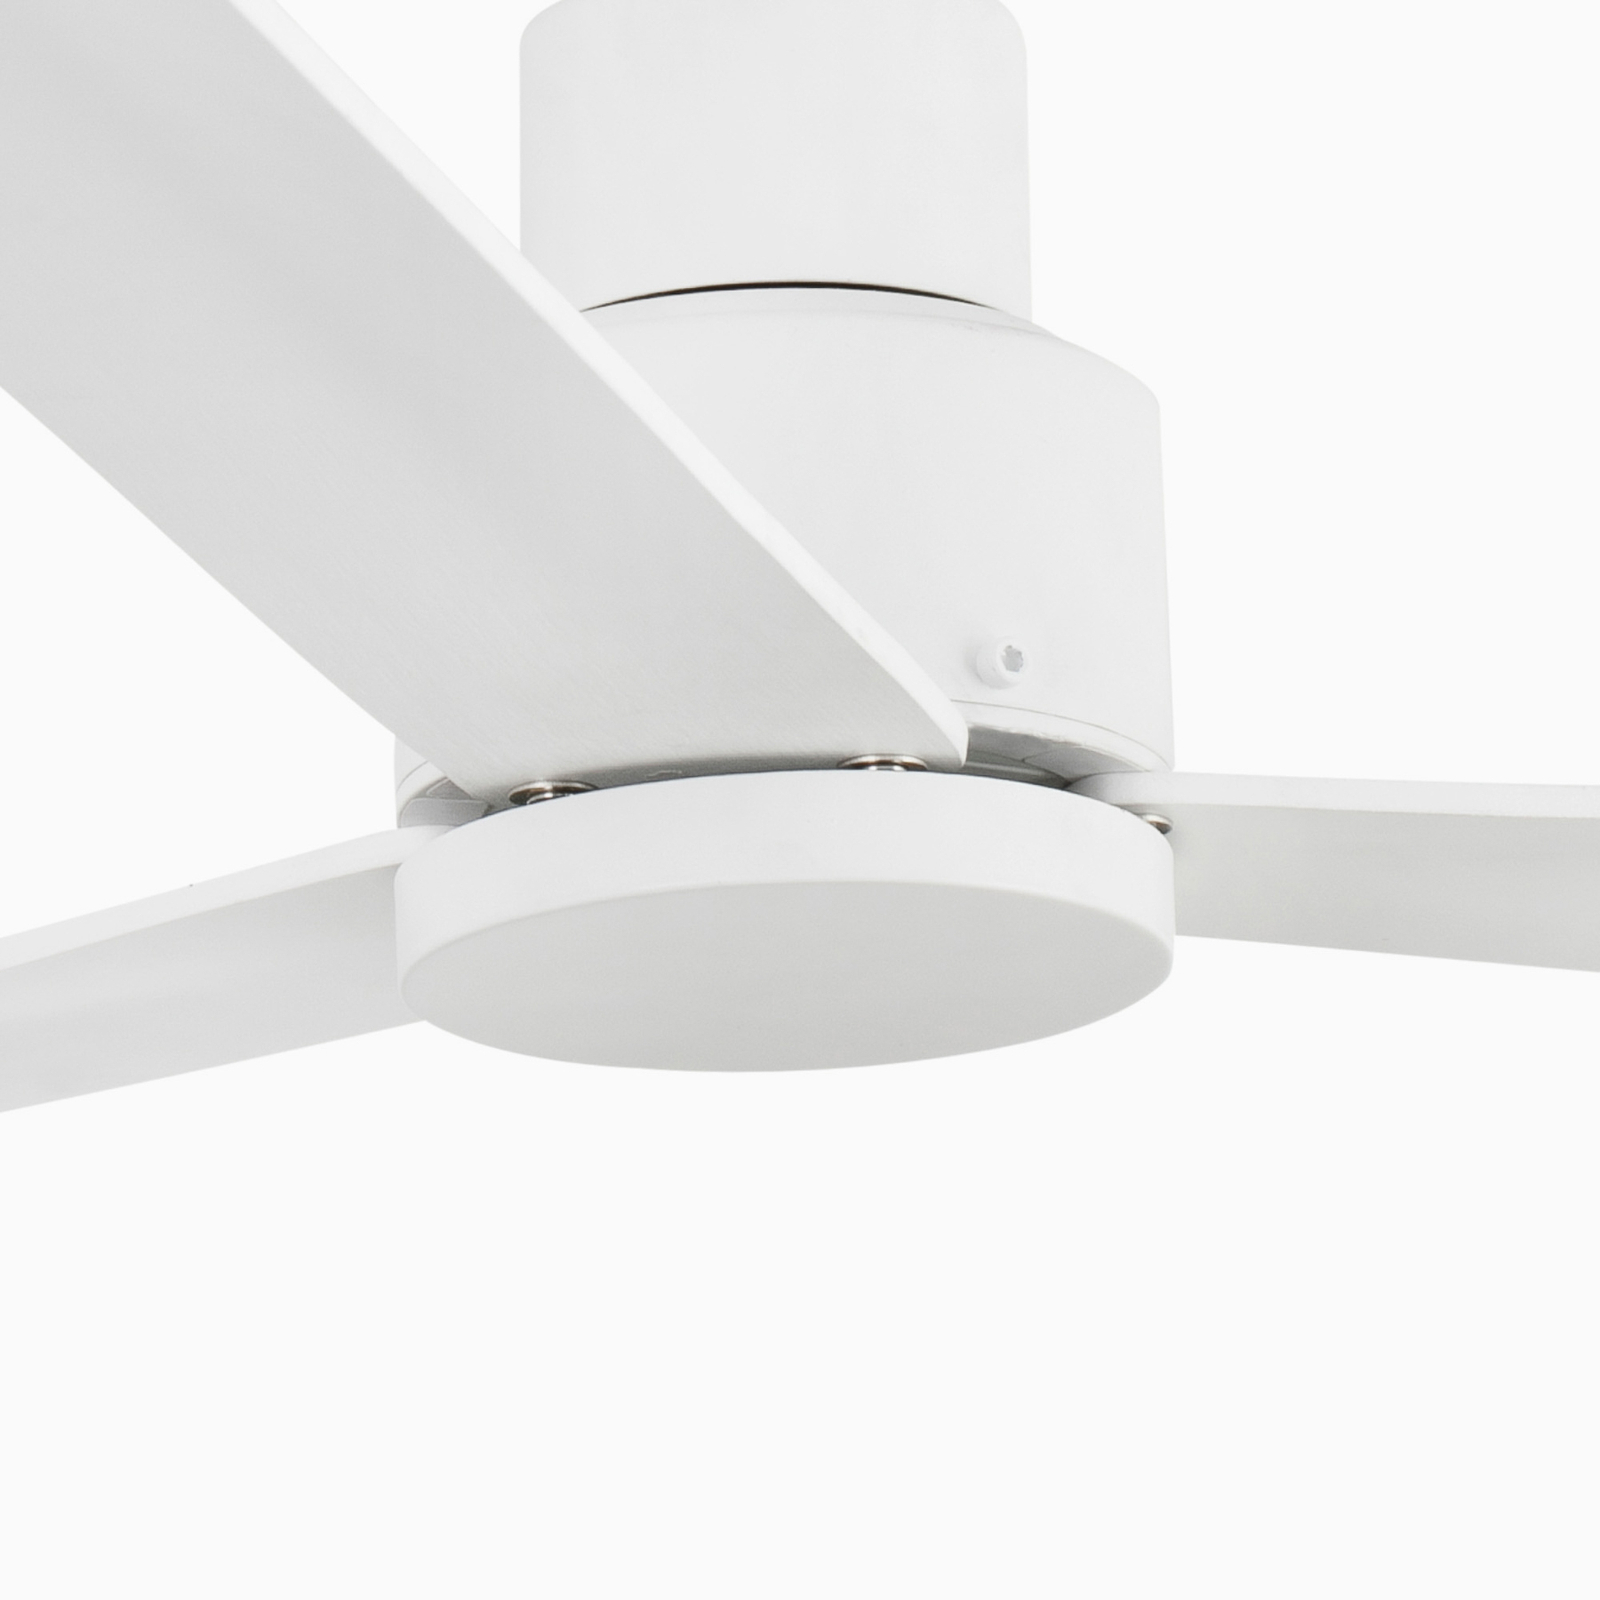 Nassau ceiling fan, 3 blades, white